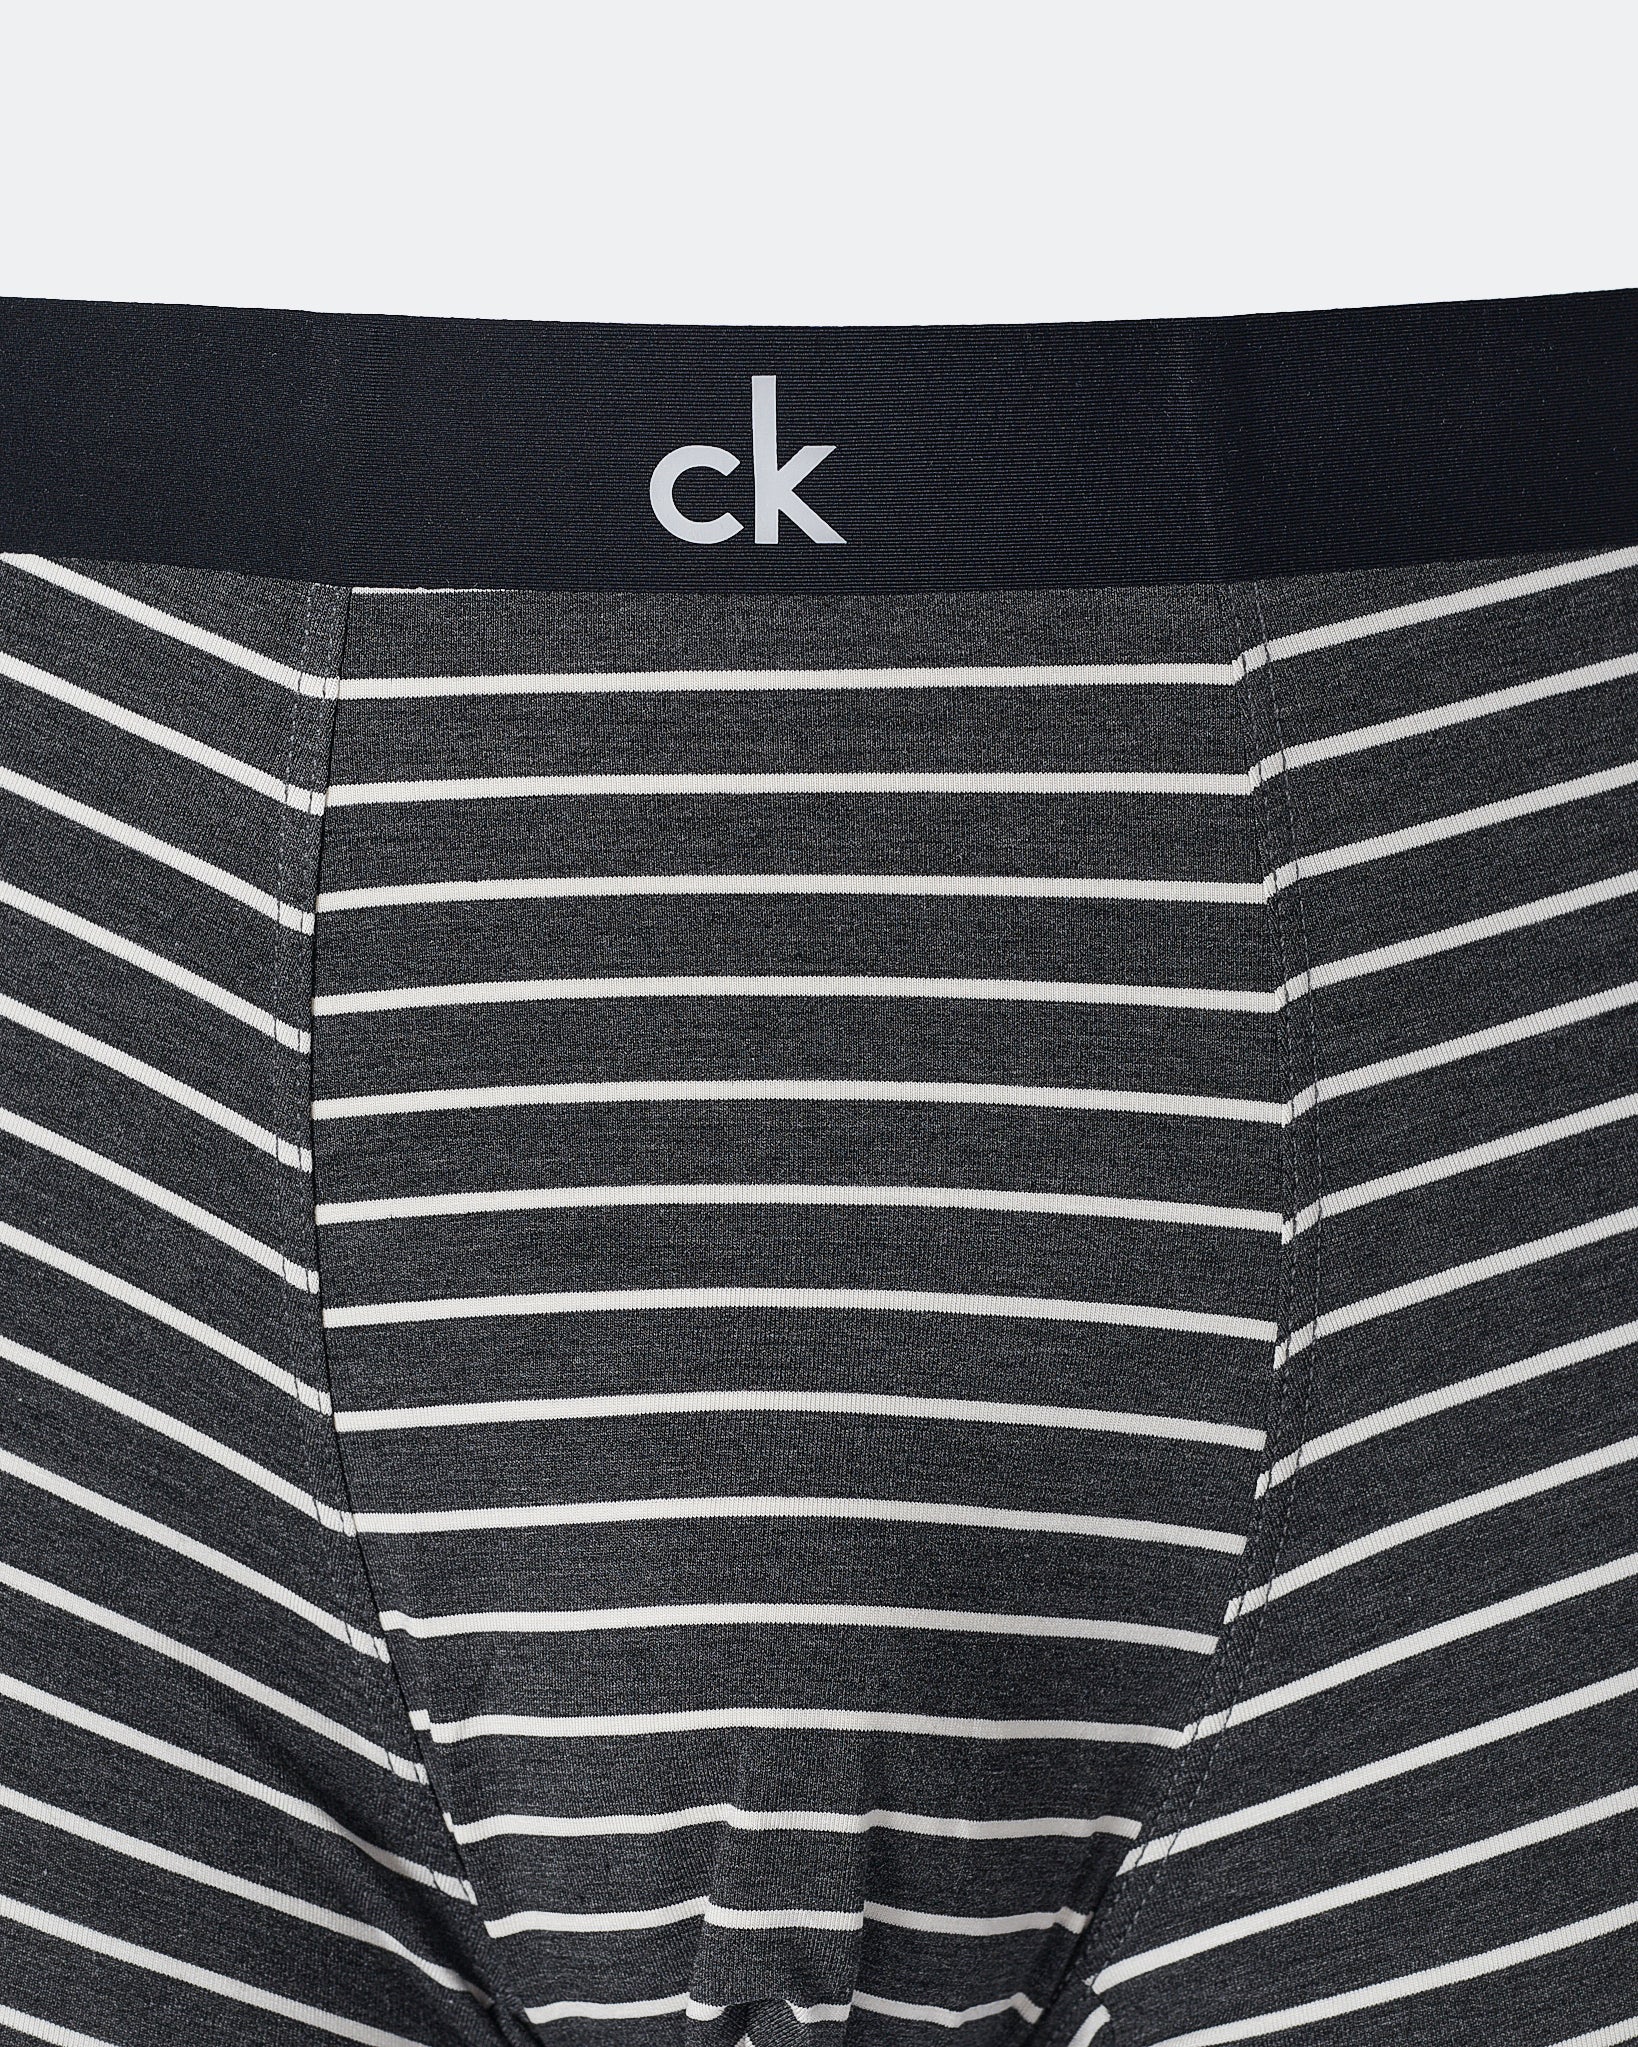 CK Striped Men Black Underwear 6.90